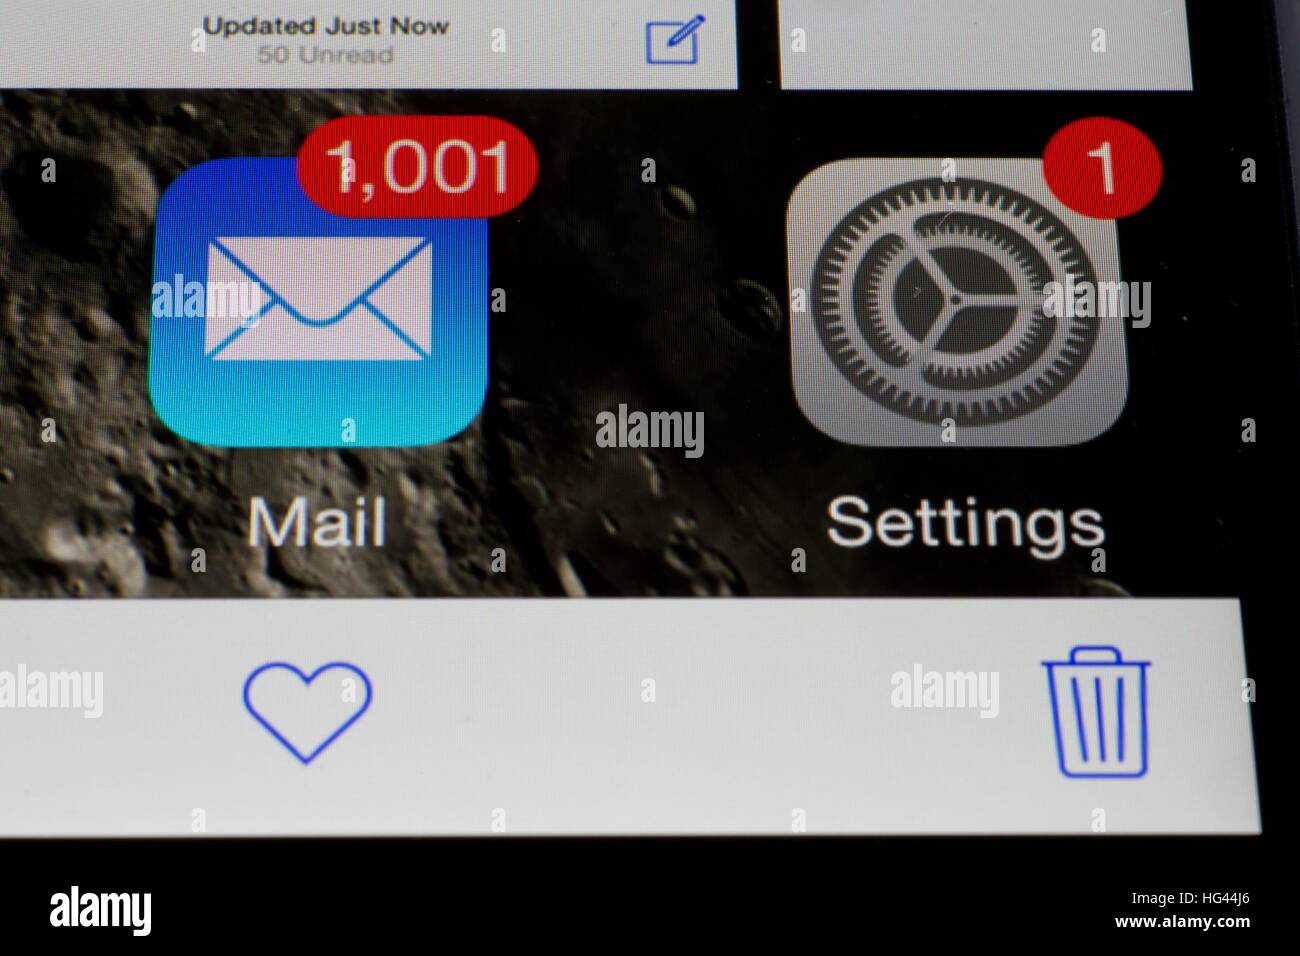 Icona posta su un iPhone 6 mostra 1001 messaggi di posta elettronica non  letti accanto all'icona Impostazioni, che indica la presenza di un  aggiornamento del sistema, nel novembre 2016. | Utilizzo di